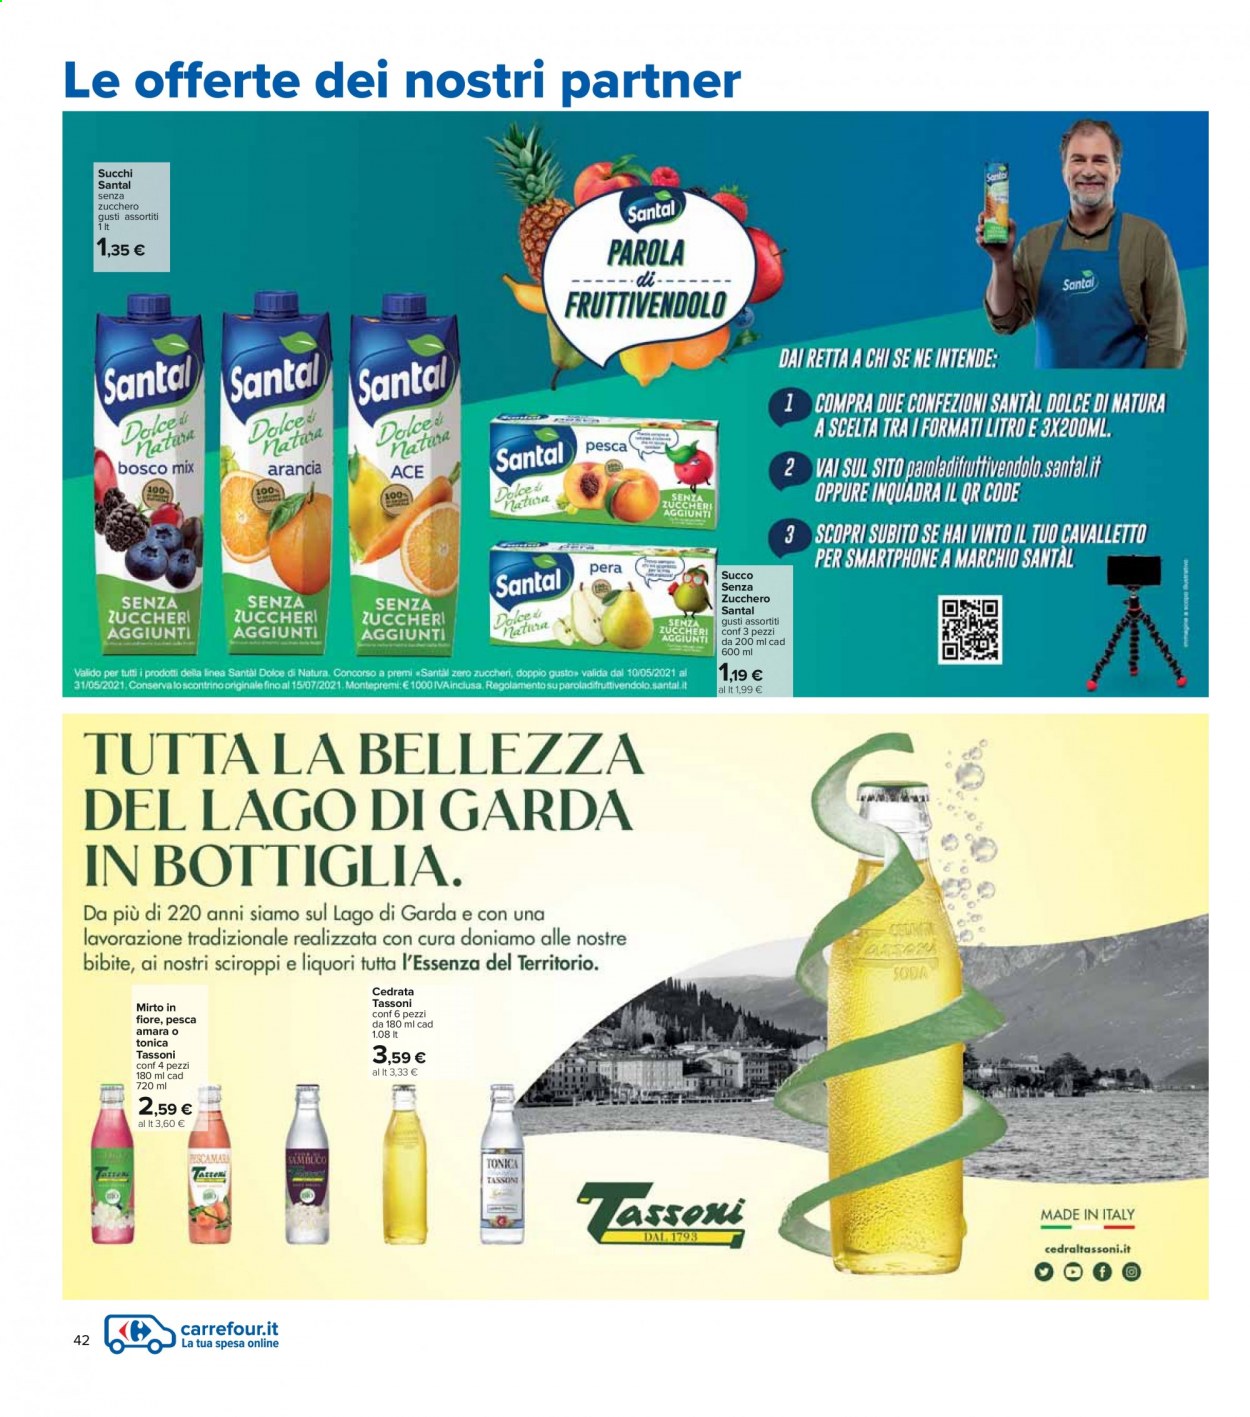 thumbnail - Volantino Carrefour - 6/5/2021 - 19/5/2021 - Prodotti in offerta - acqua tonica, succo, cedrata, bibita gassata, Santal, Mirto, smartphone, cavalletto. Pagina 42.